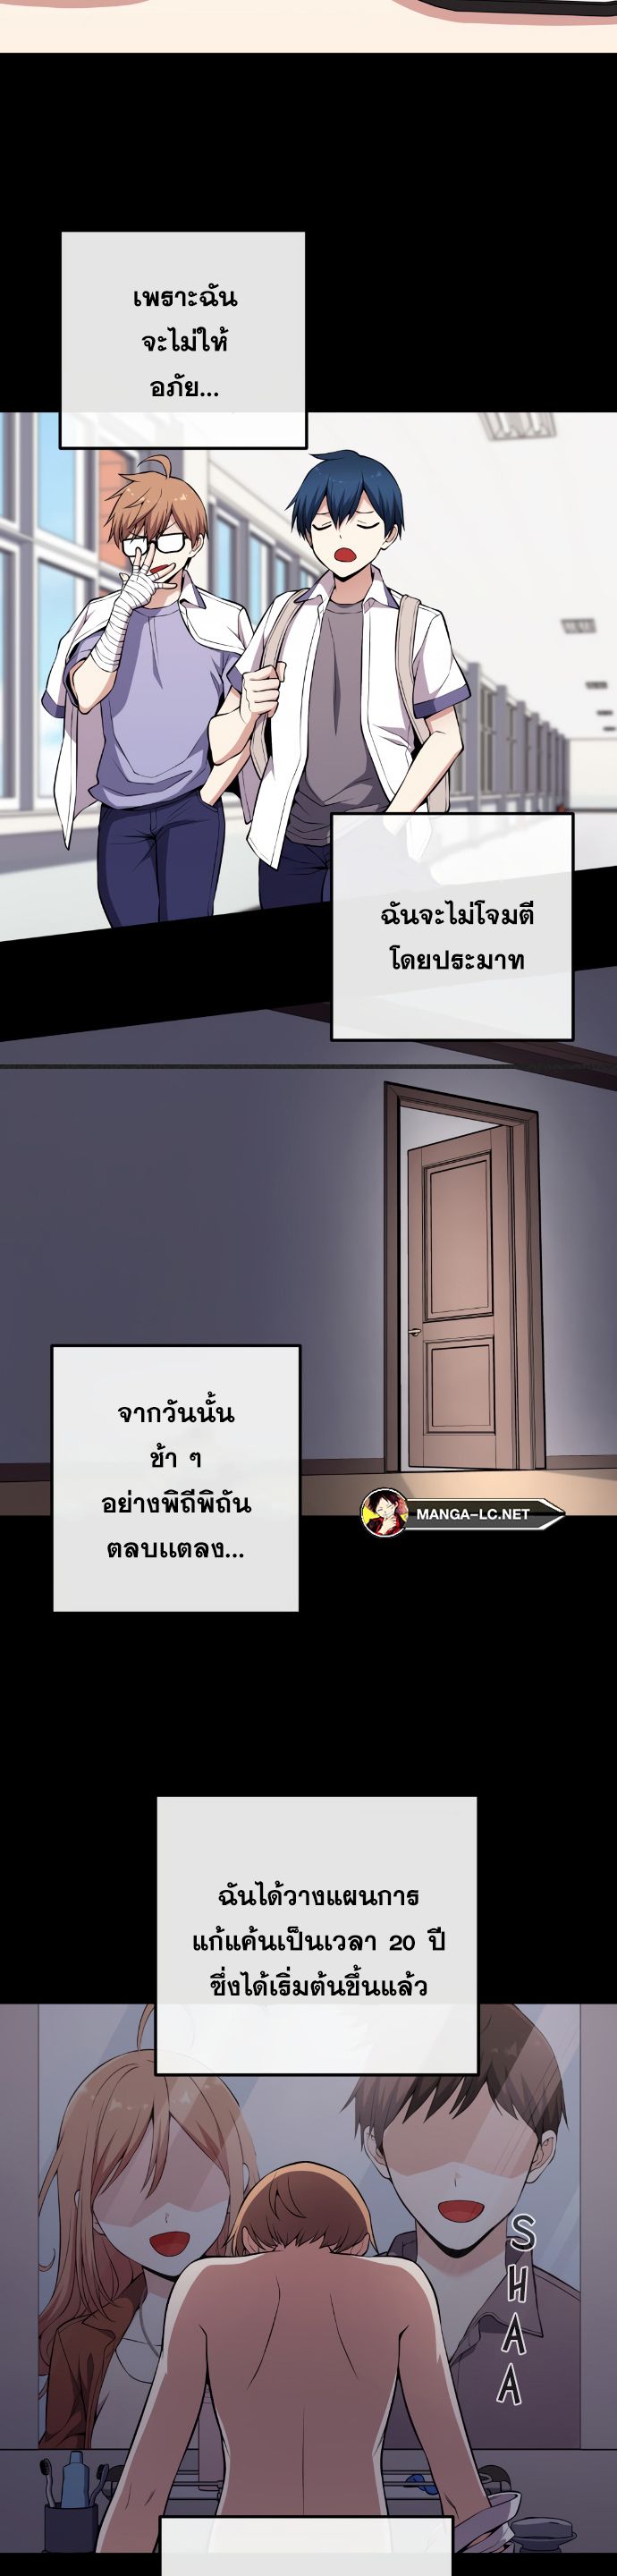 อ่านมังงะ Webtoon Character Na Kang Lim ตอนที่ 139/16.jpg